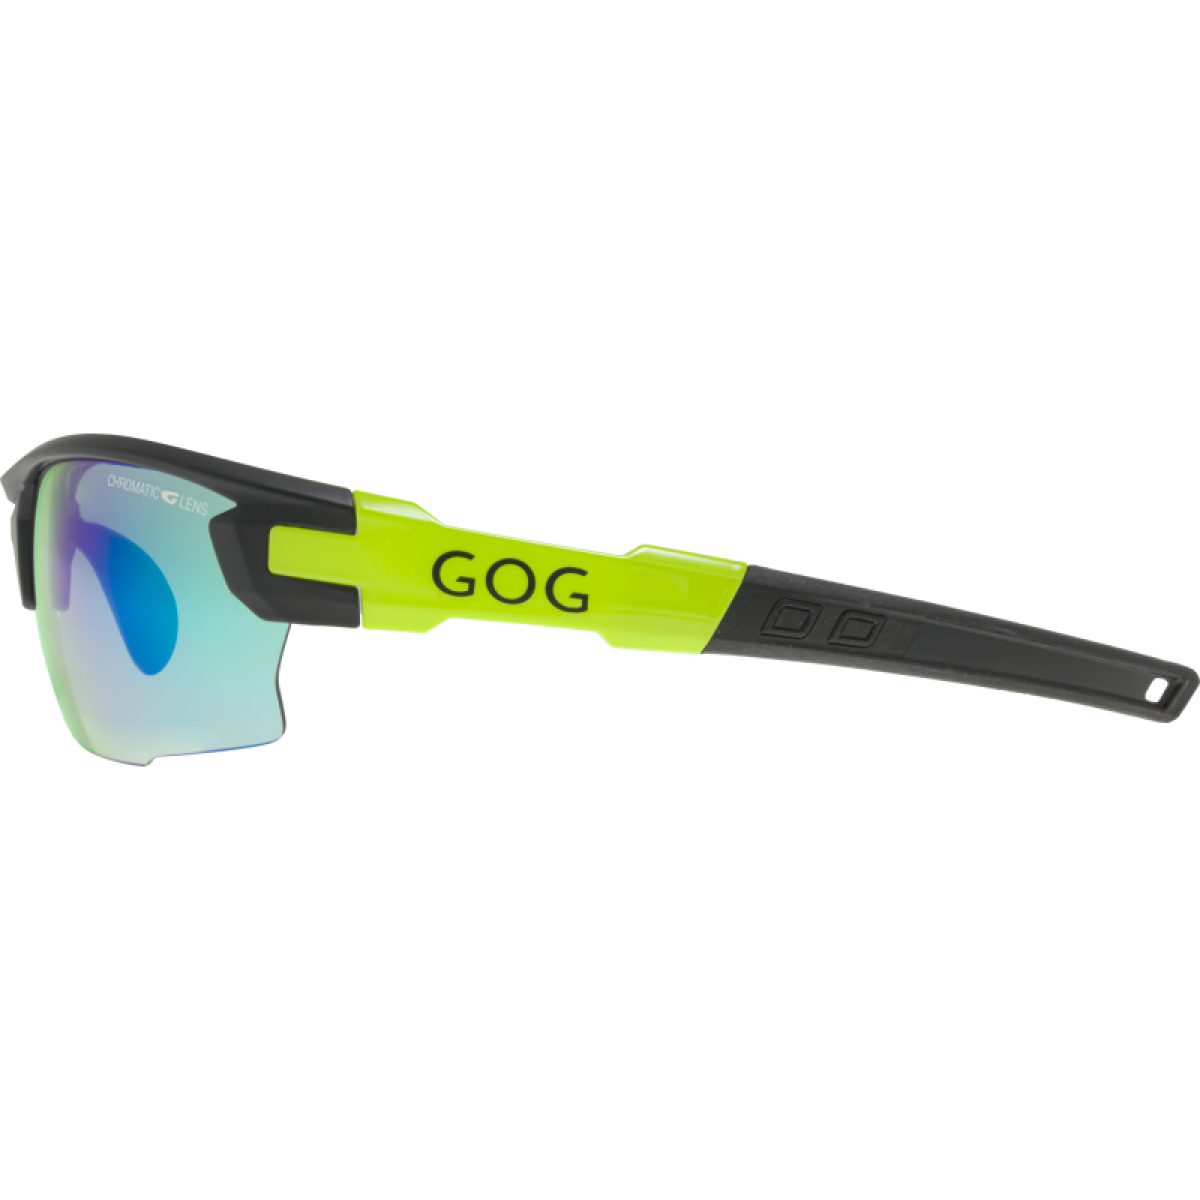 Photochromic Sunglasses E544-2 GOG - view 4